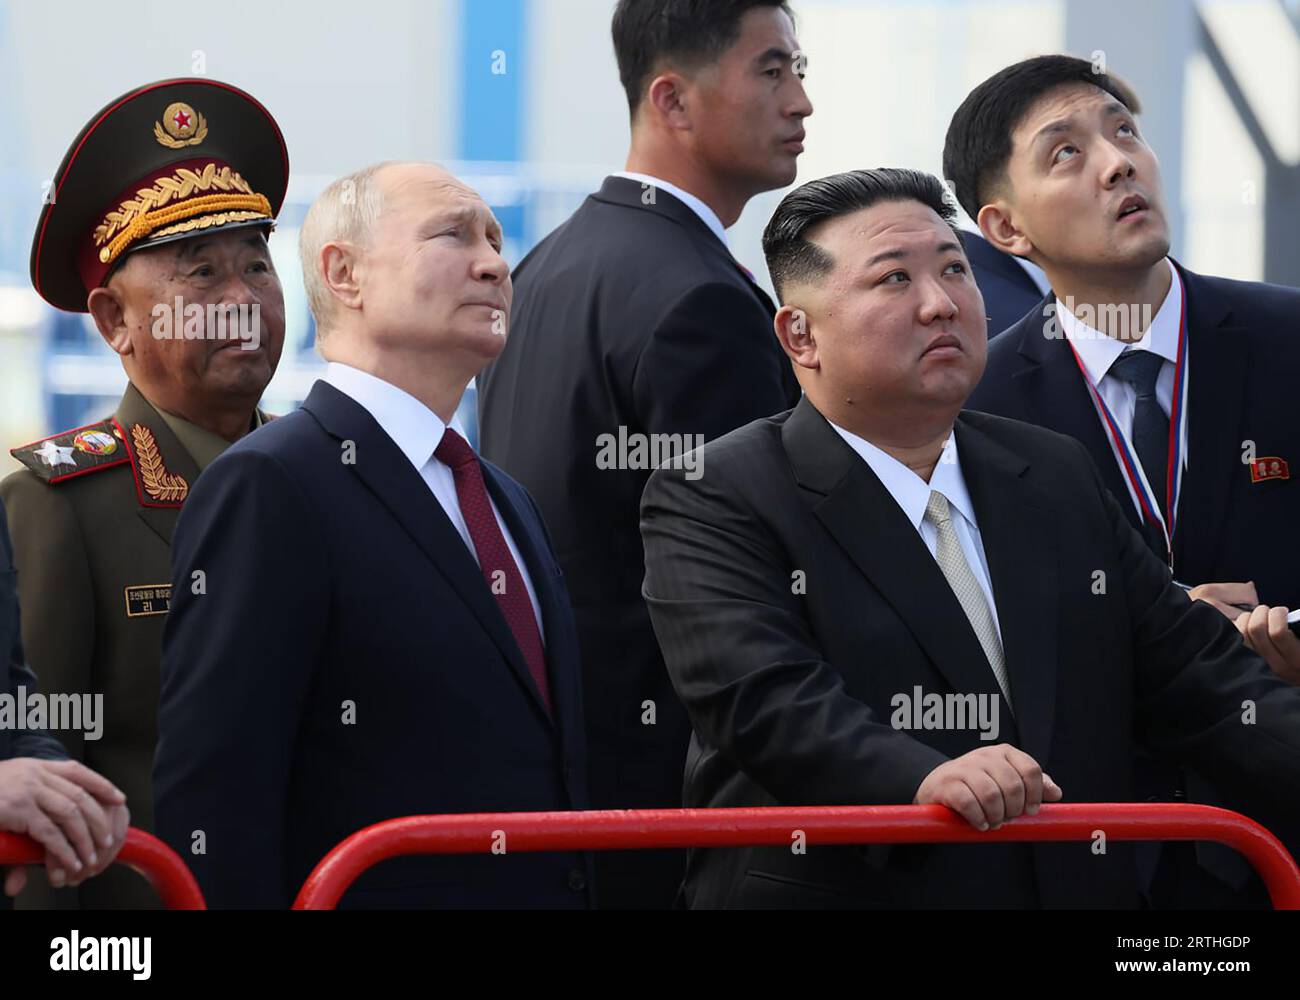 Amur, Rusia. 13 de septiembre de 2023. El líder norcoreano Kim Jong-un (C-R) y el presidente ruso Vladimir Putin (C-L) examinan un hangar de ensamblaje de cohetes durante su reunión el 13 de septiembre de 2023 en el cosmódromo Vostochny en la región de Amur, Rusia. Las conversaciones entre los dos líderes podrían llevar a un acuerdo de armas, ya que el líder norcoreano Kim Jong Un ha ofrecido al presidente ruso Vladimir Putin el 'apoyo inquebrantable' de su país a la 'lucha salvada' de Rusia. Kim dijo que Corea del Norte 'siempre estará con Moscú' en su 'lucha contra el imperialismo'. Foto de KREMLIN POOL/ Crédito: UPI/Alamy Live News Foto de stock